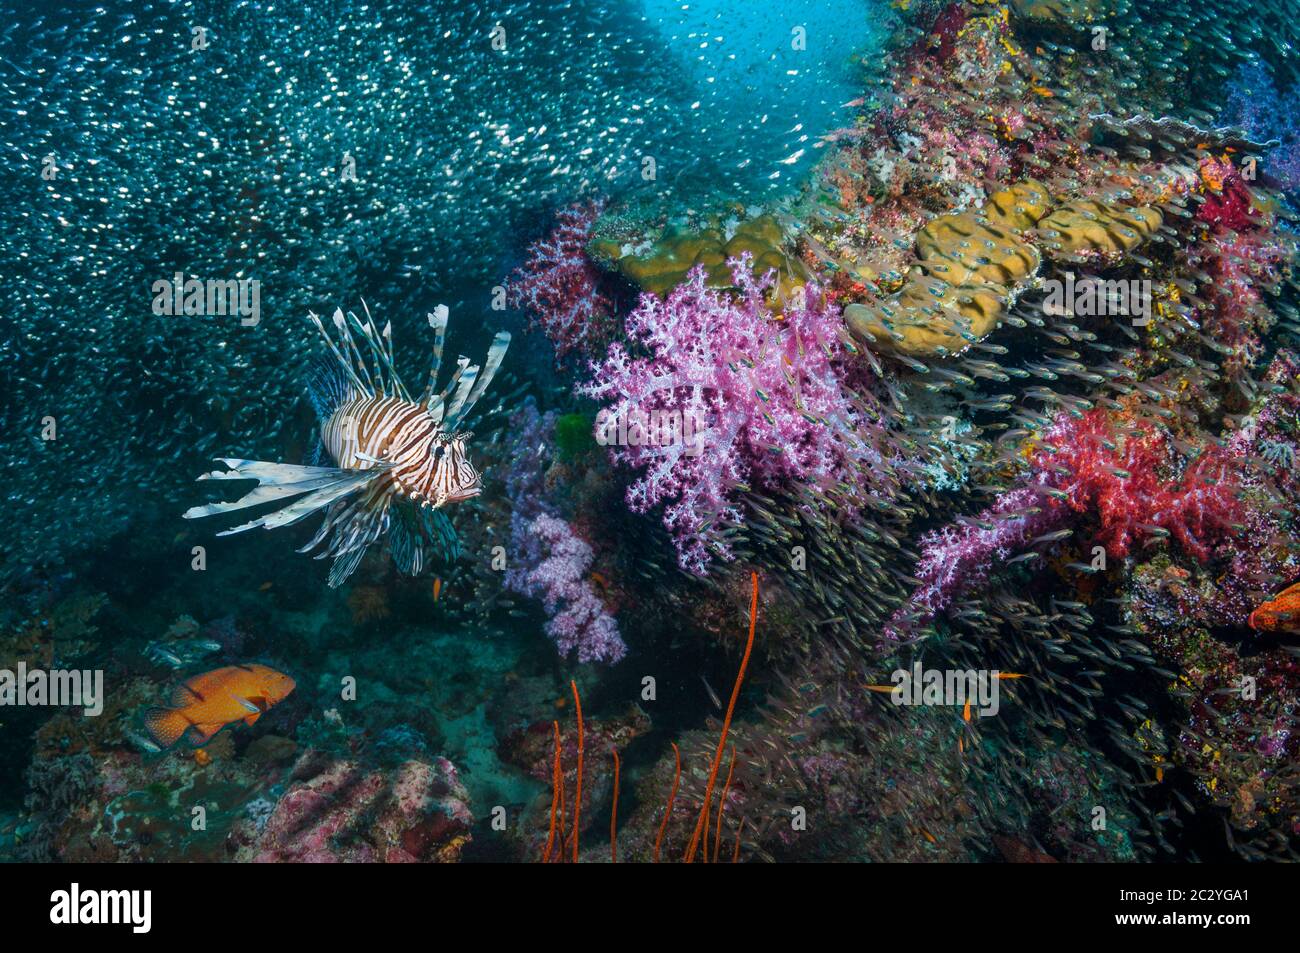 Poisson-lion commun [Pterois volitans] chasse cardinalfish sur récif de corail avec coraux mous. Mer d'Andaman, Thaïlande. Banque D'Images